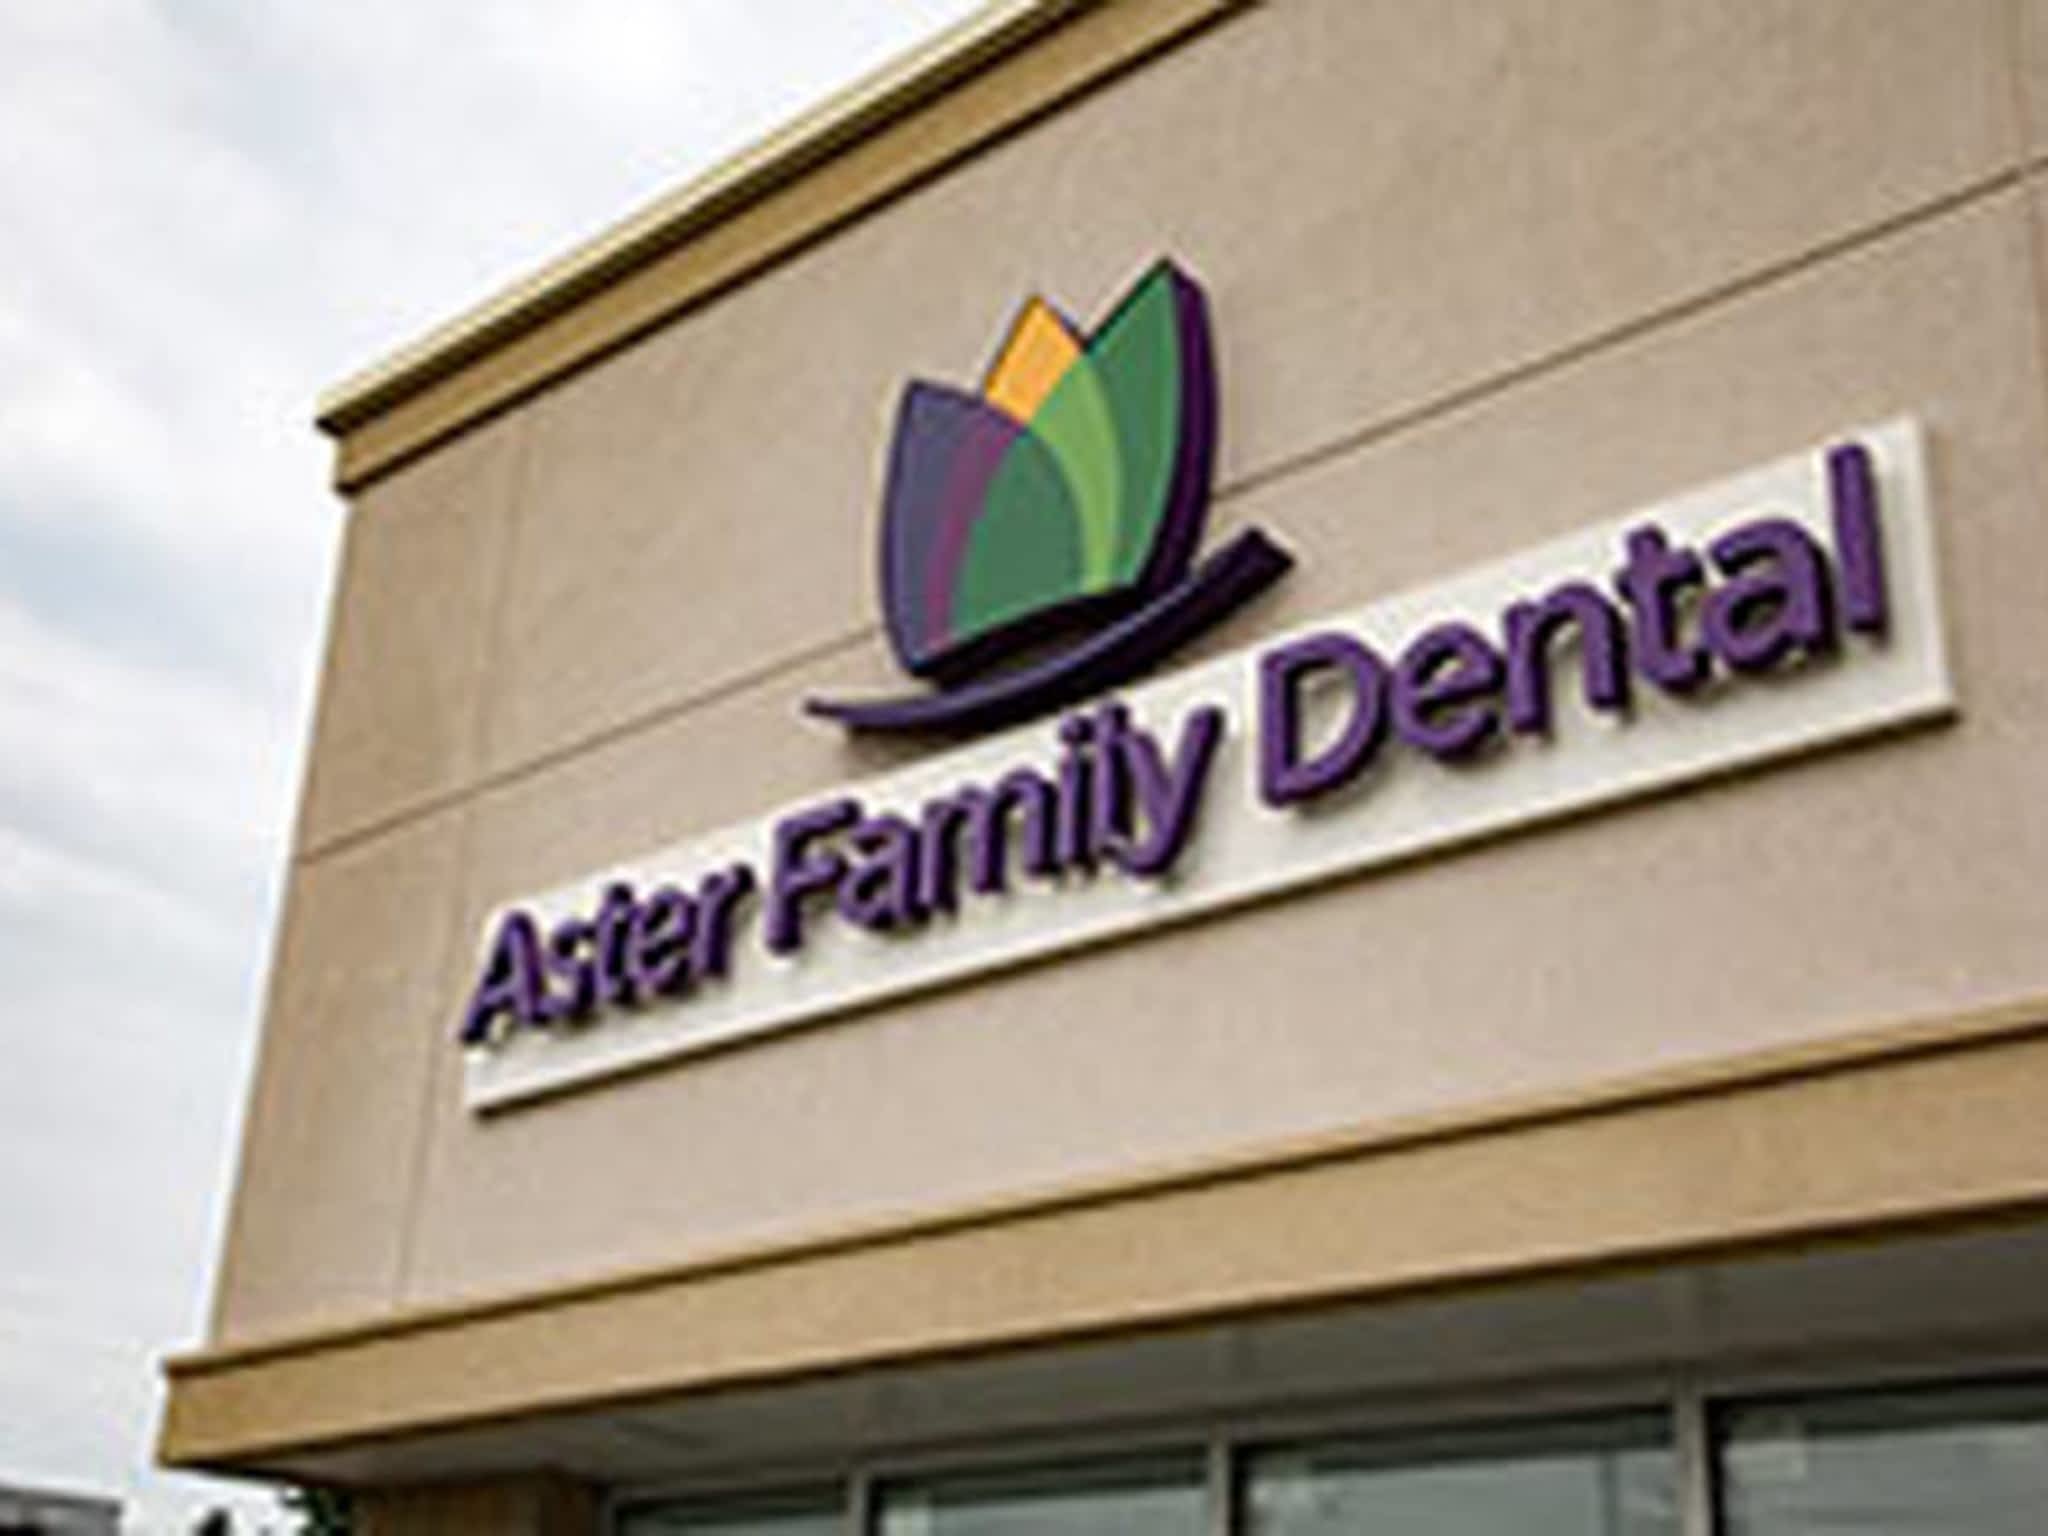 photo Aster Family Dental